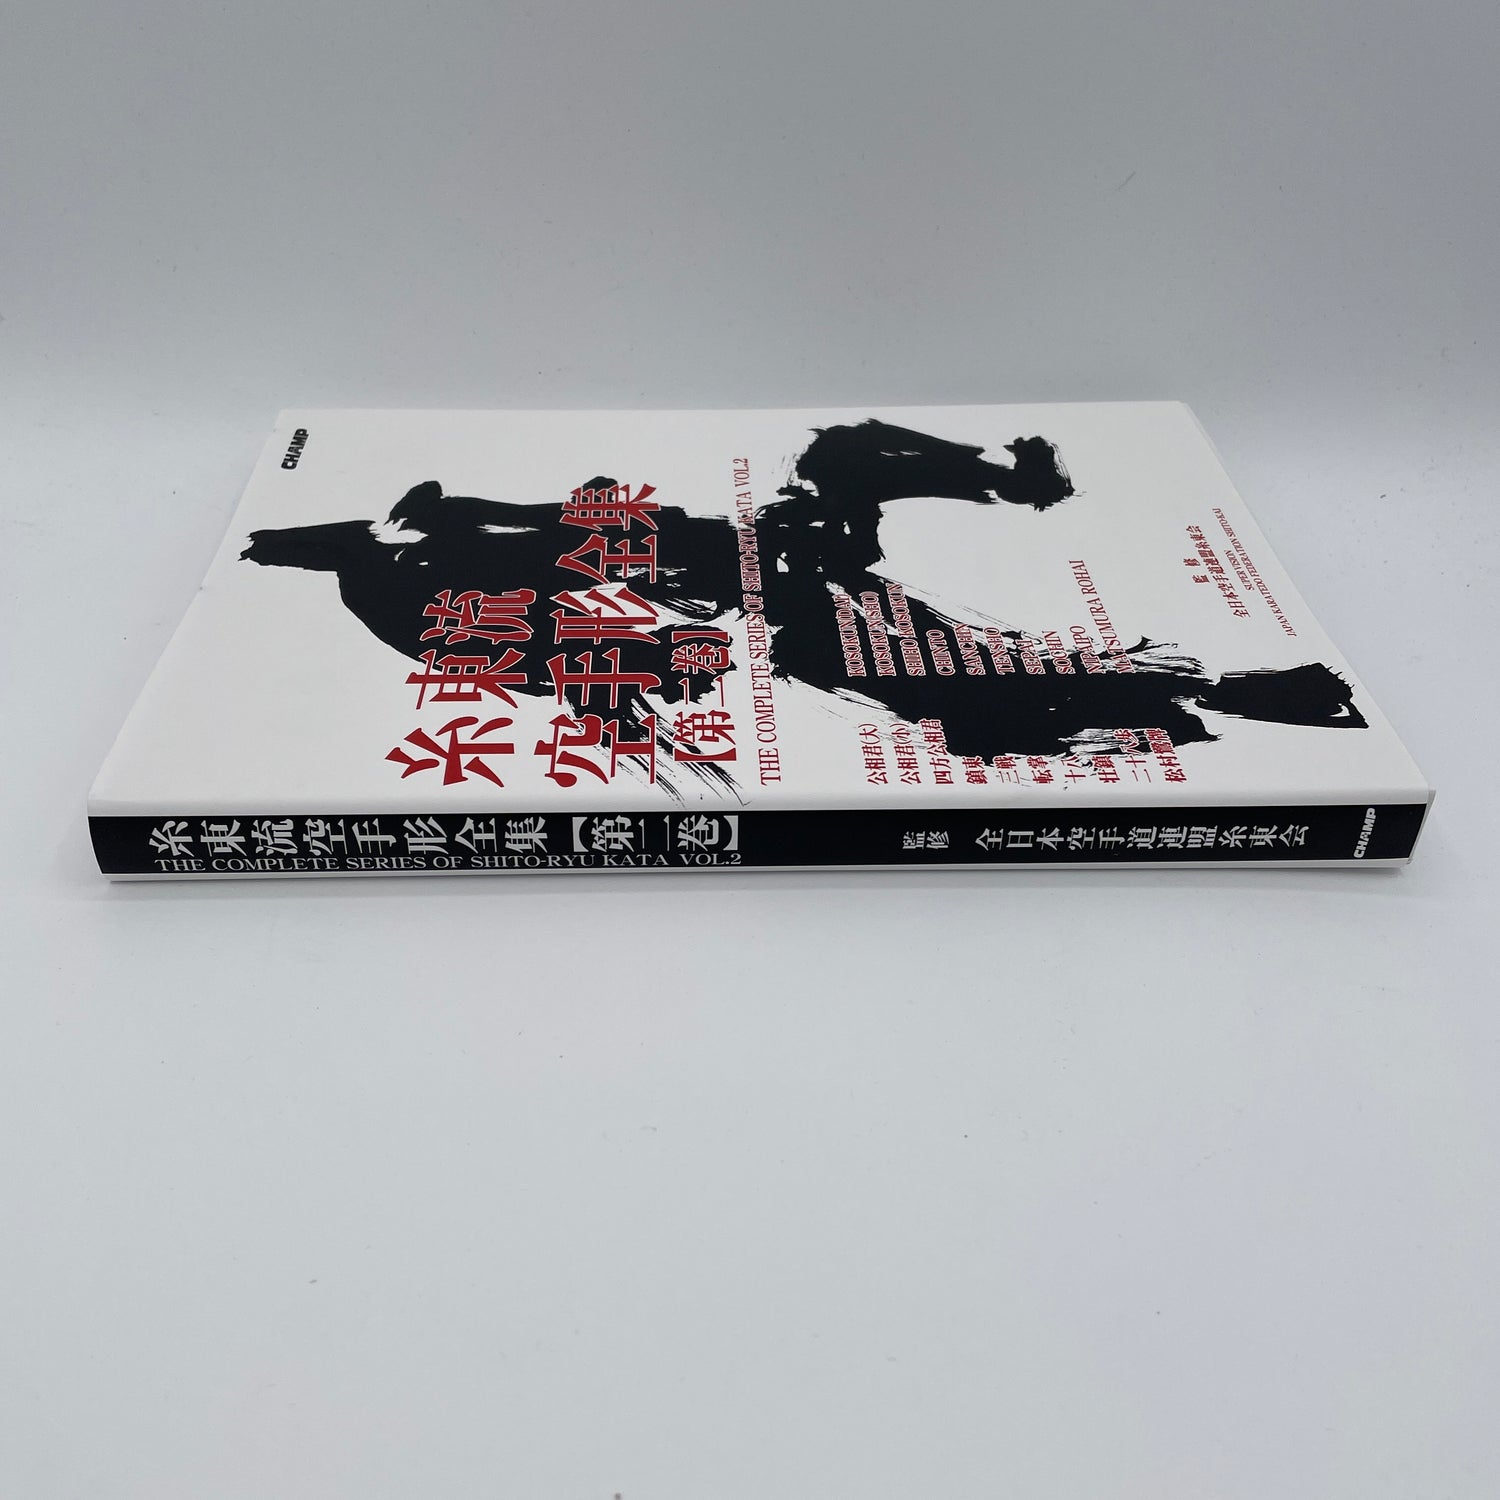 Complete Series of Shito Ryu Kata Book 2